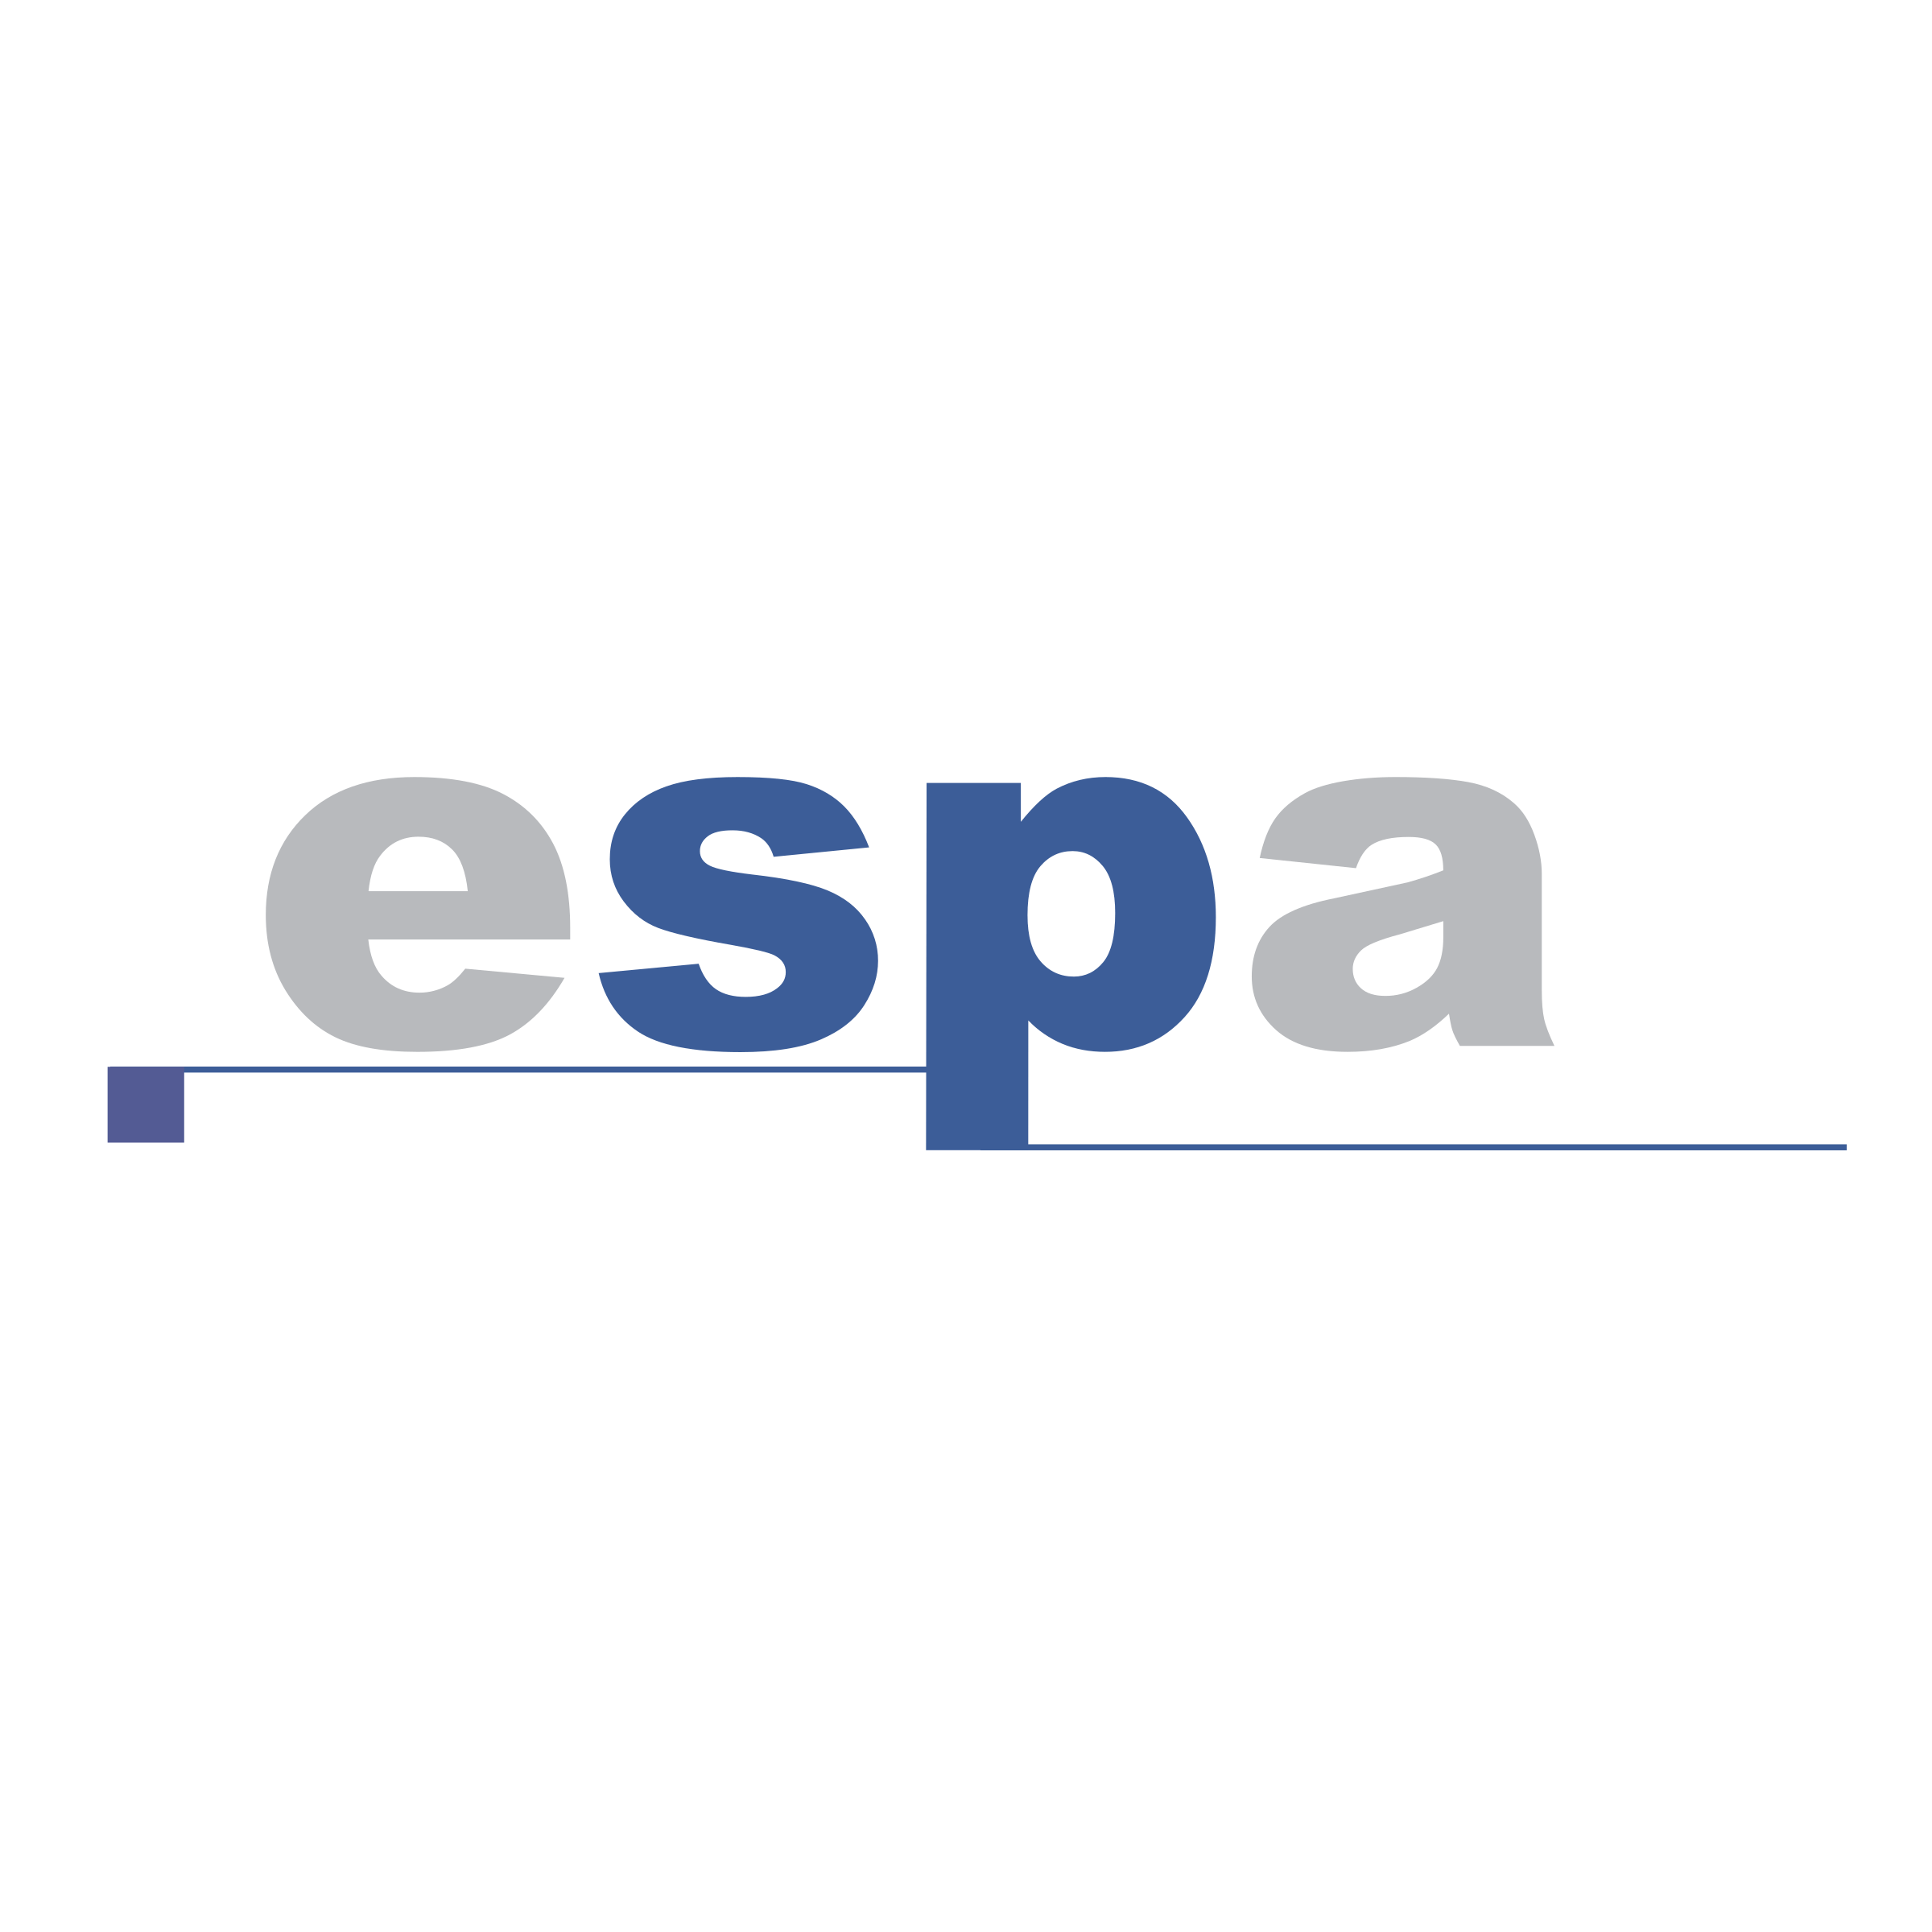 Espa Logo - ESPA Logo PNG Transparent & SVG Vector